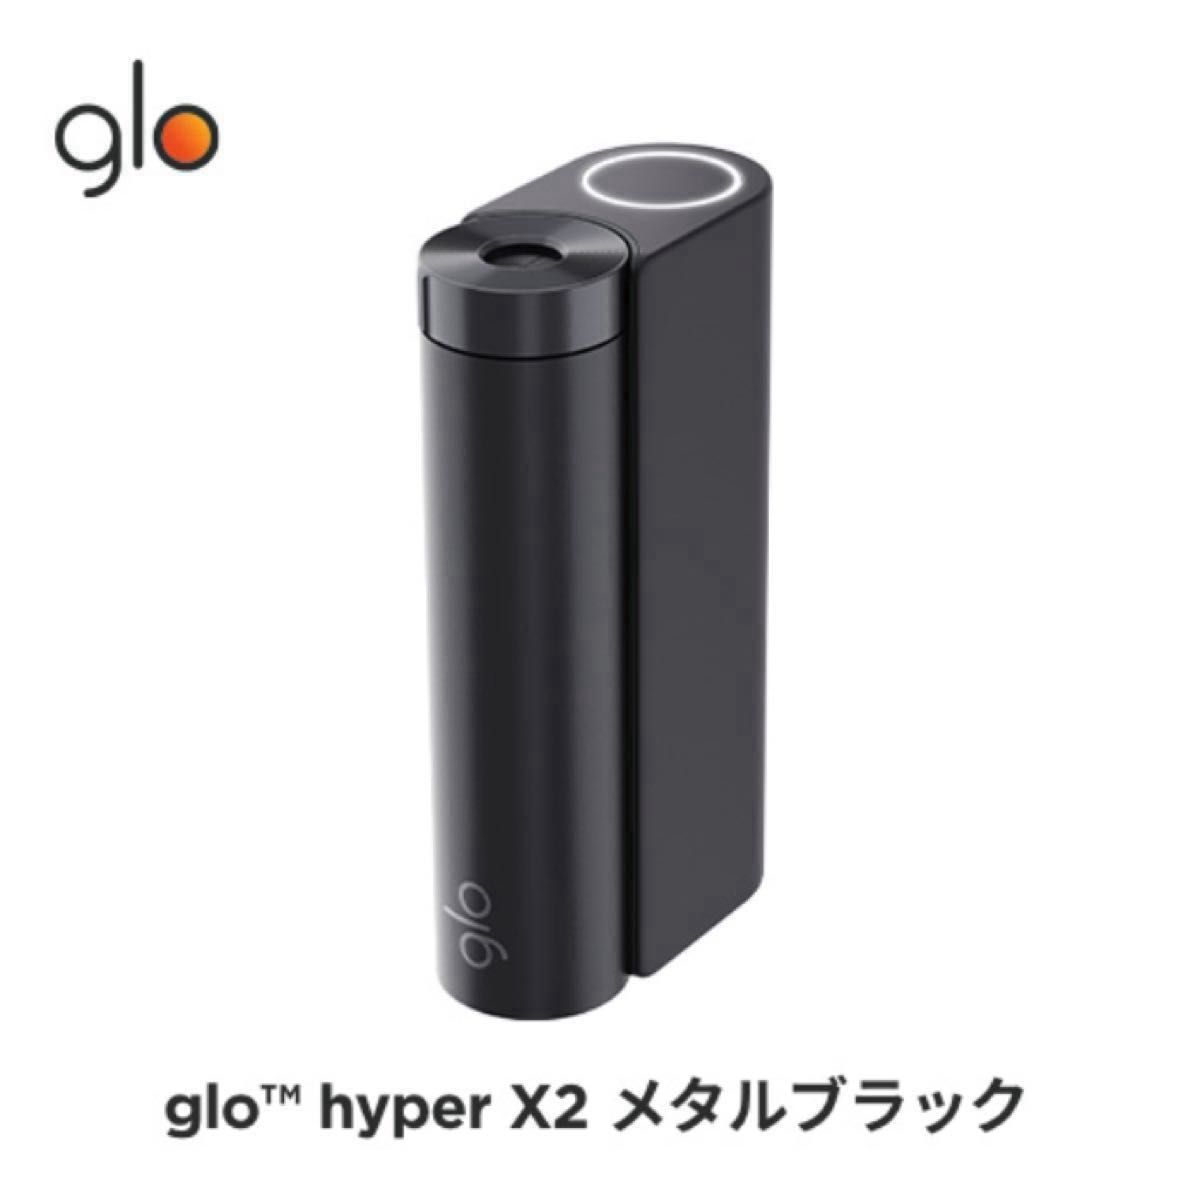 【新品・未開封・未登録品】glo HYPER X2 グロー ハイパー X2  メタルブラック 本体スターターキット